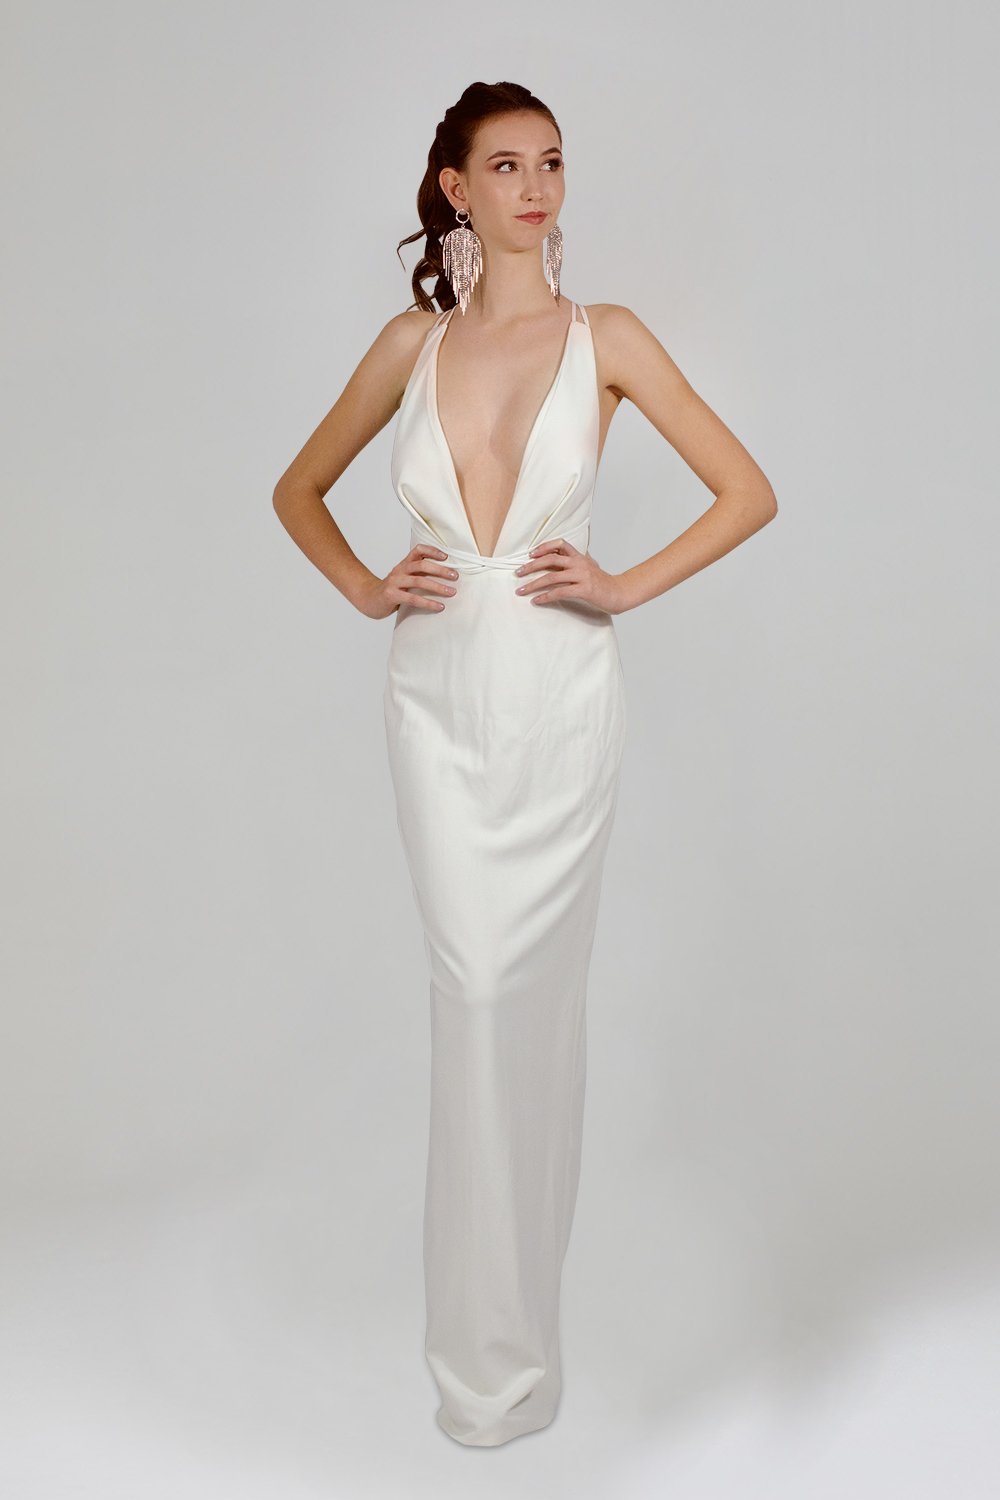 http://enviousbridal.com.au/cdn/shop/products/nicola-plunge-neckline-fitted-white-formal-dress-formal-dresses-296583.jpg?v=1633855104